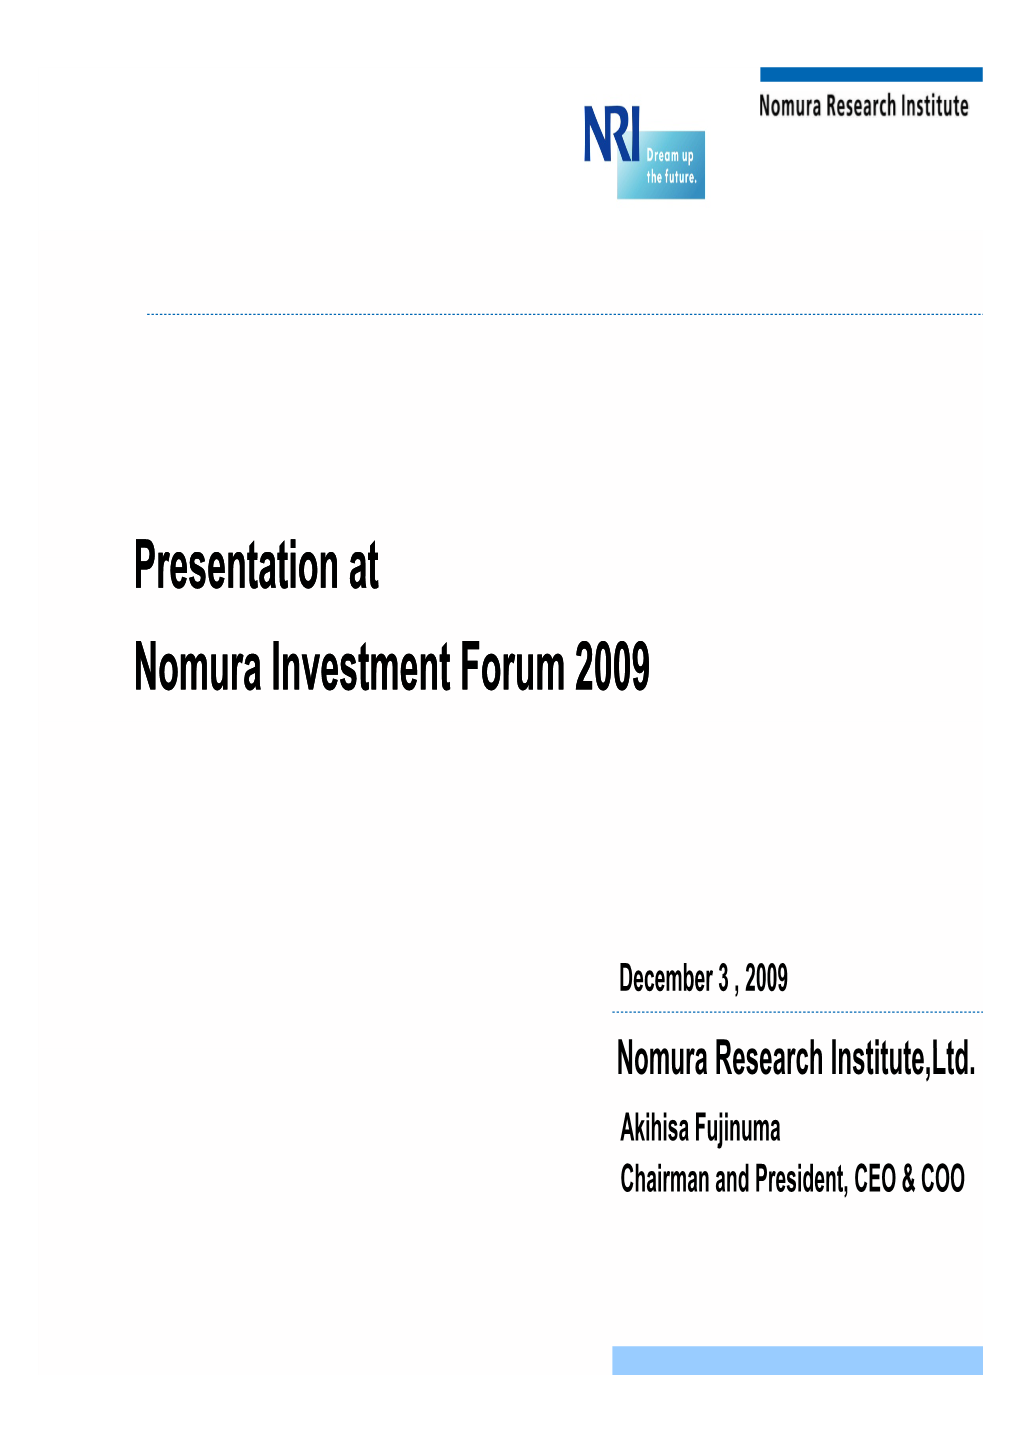 Presentation at Nomura Investment Forum 2009